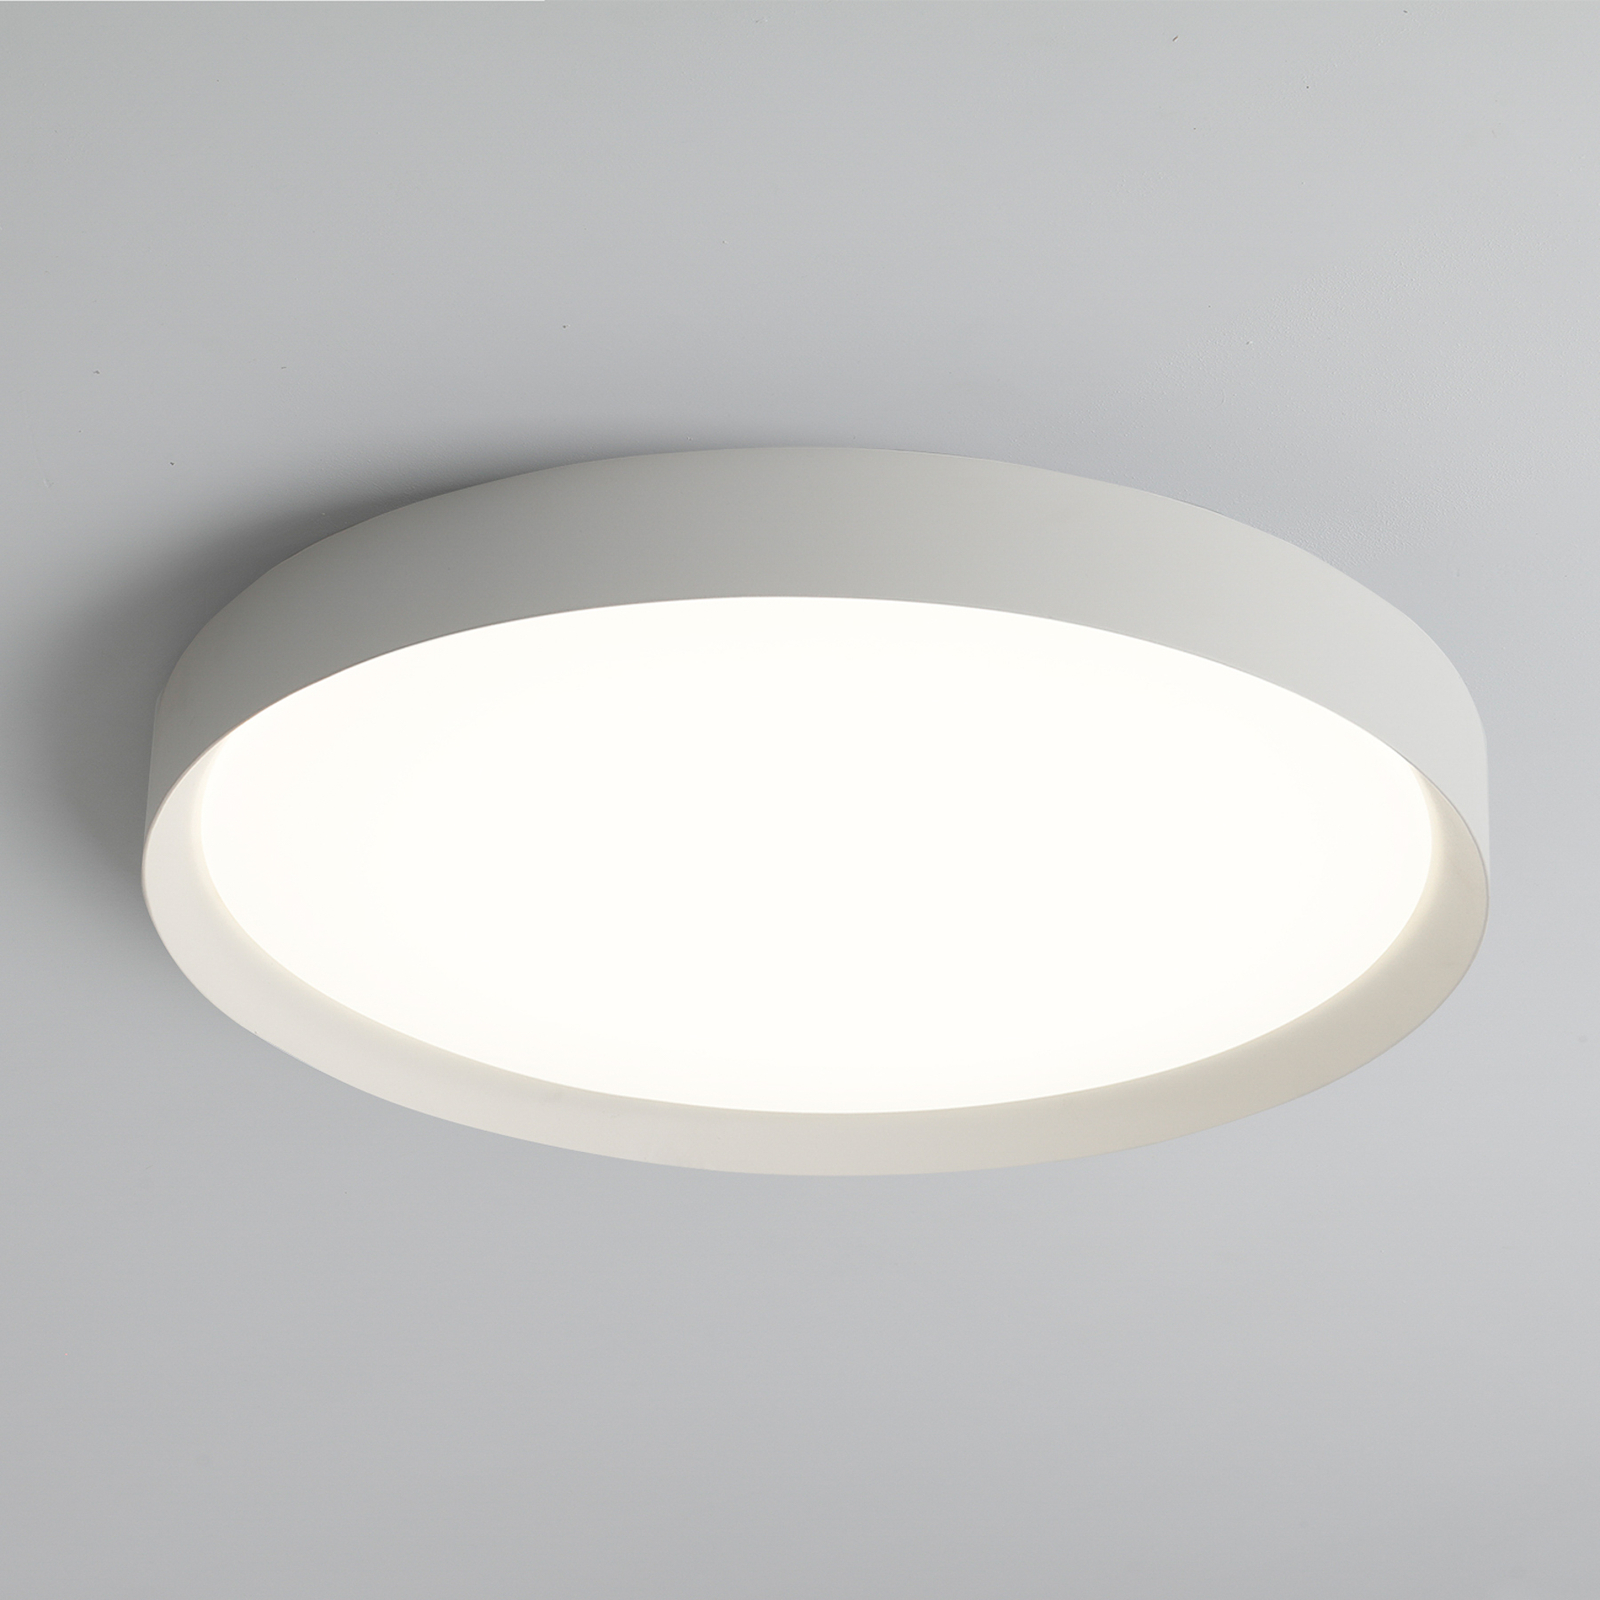 LED stropna svetilka Minsk, Ø 60 cm, Casambi, 42 W, bela